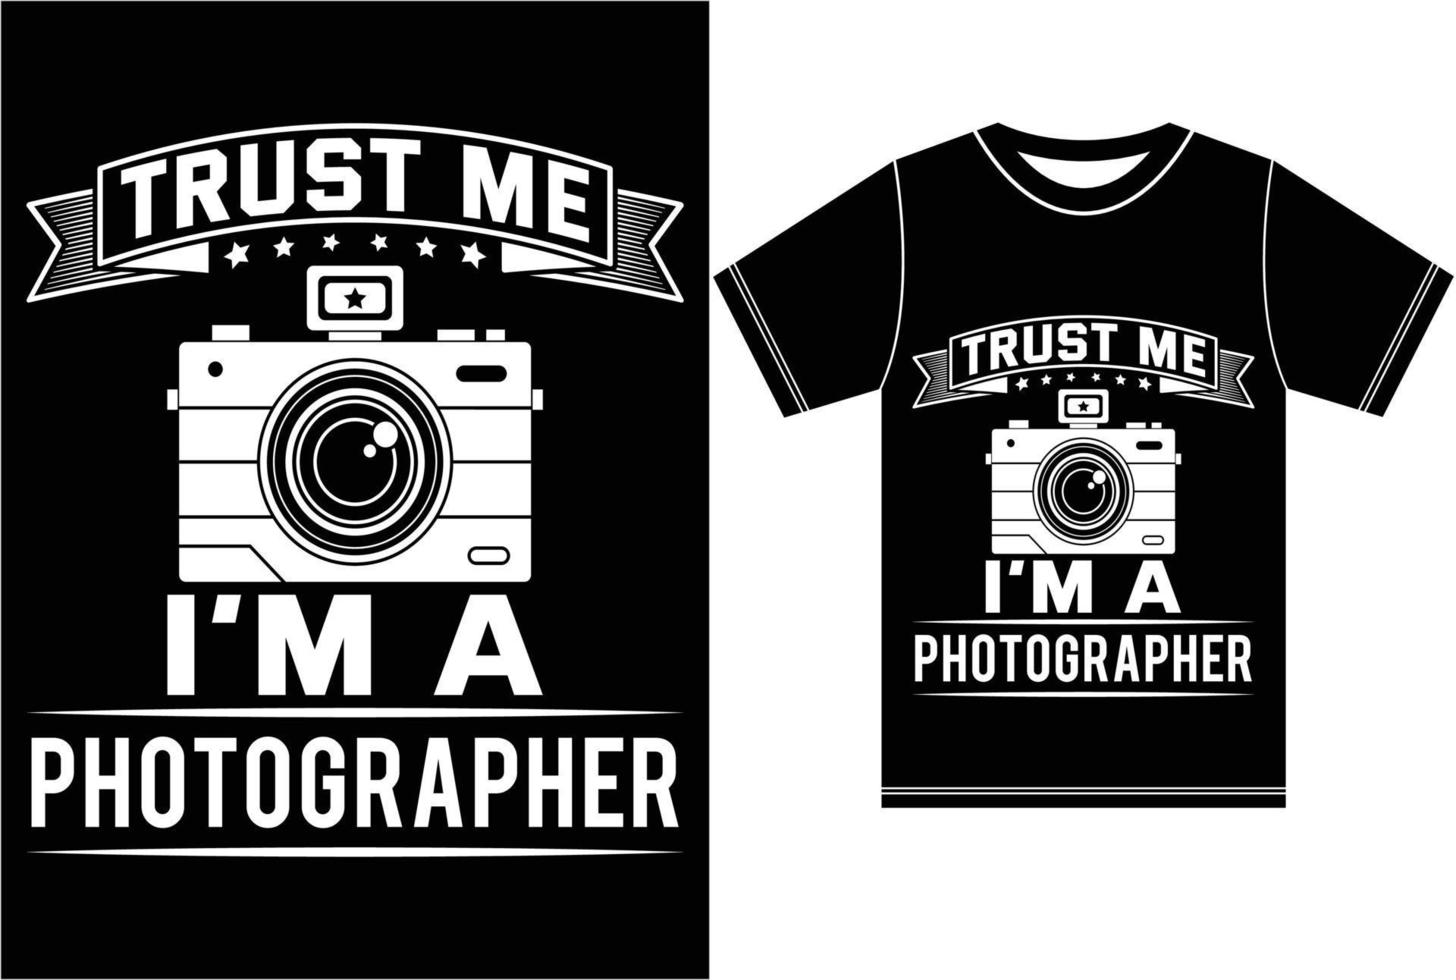 Vertrauen Sie mir, ich bin eine Fotografie. Fotografie-T-Shirt-Design vektor